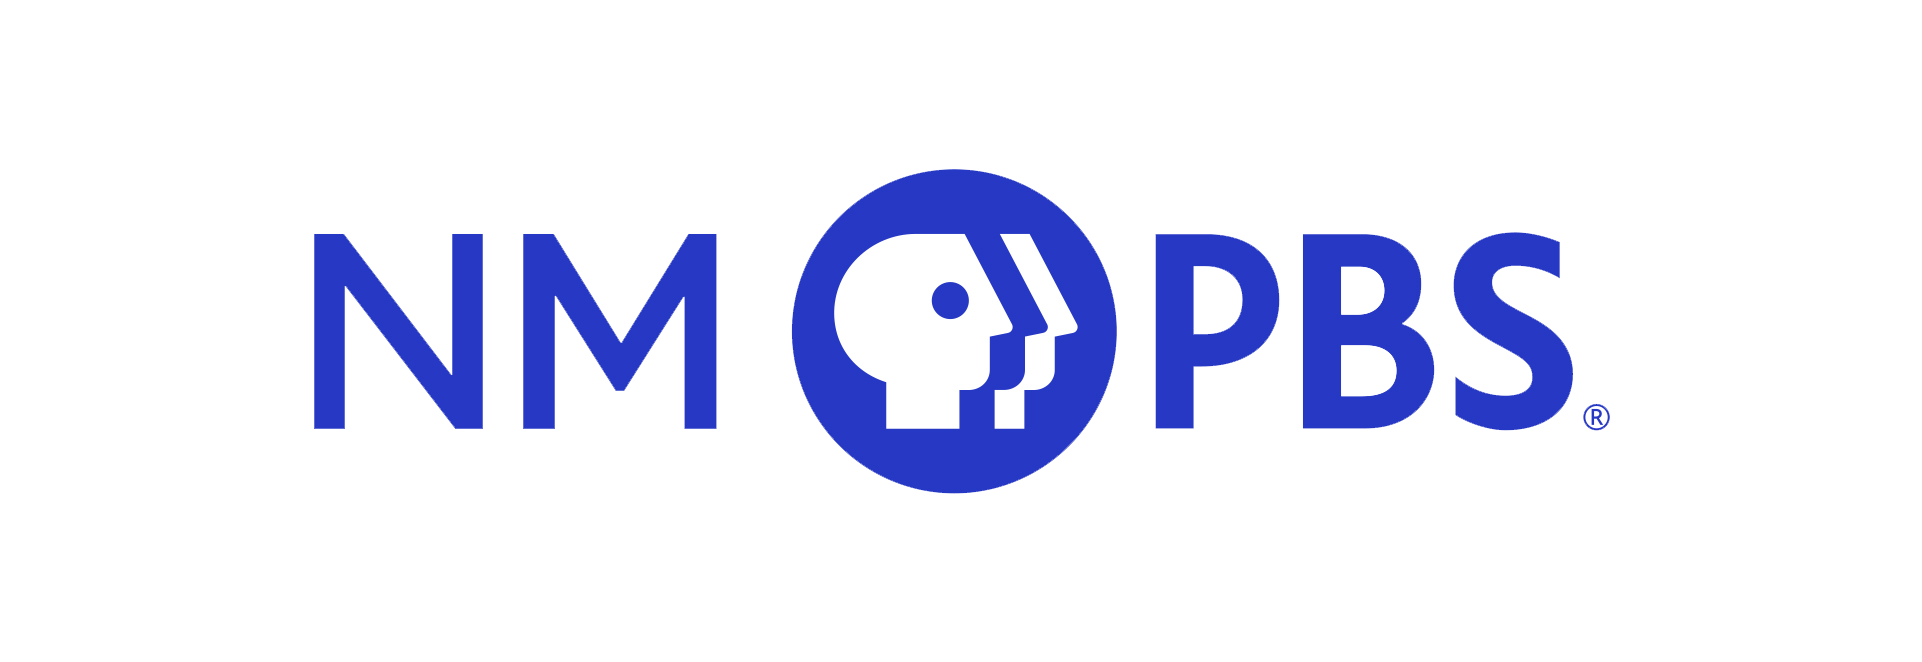 NM PBS logo